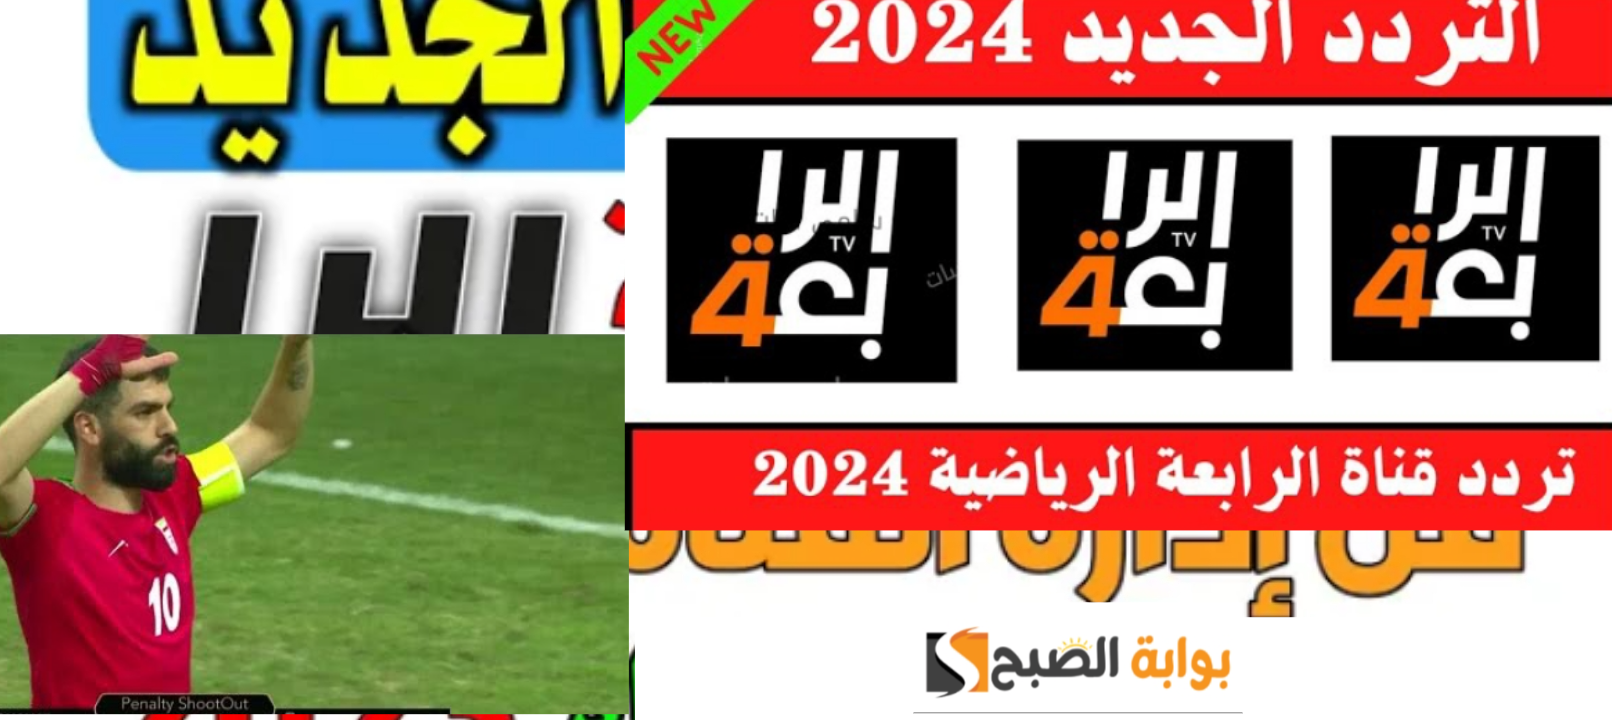 تردد قناة الرابعة الرياضية العراقية 2024 نايل سات وعرب سات وجميع الاقمار الصناعية